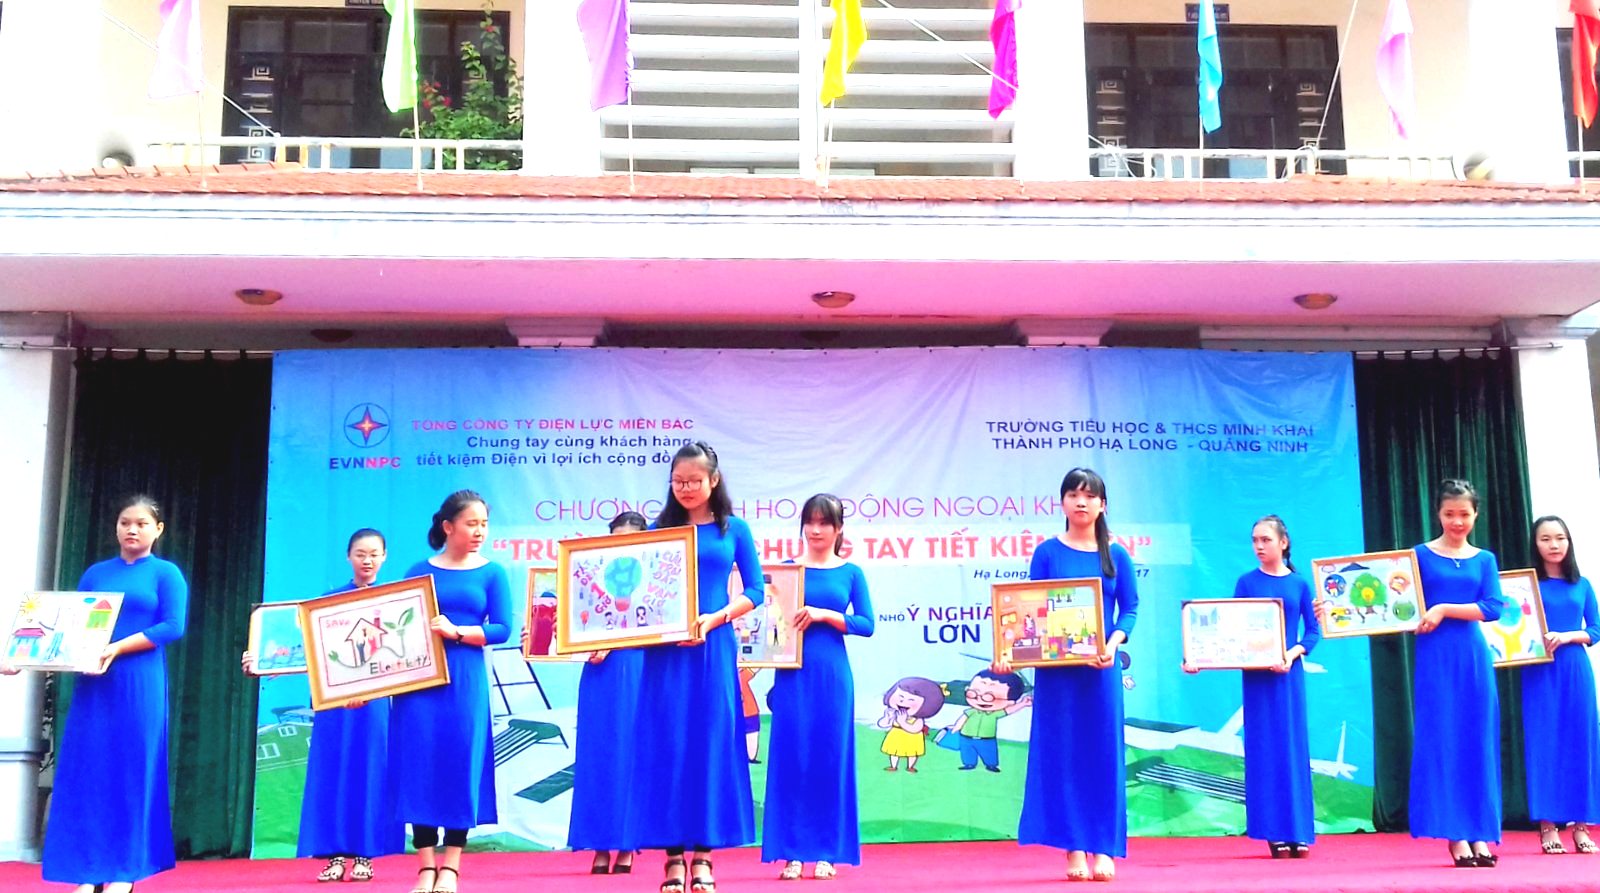 Giáo viên trường TH&THCS Minh Khai, thực hiện tuyên truyền cho học sinh trong toàn trường biết tiết kiệm nguồn năng lượng bằng những thông điệp hữu ích.